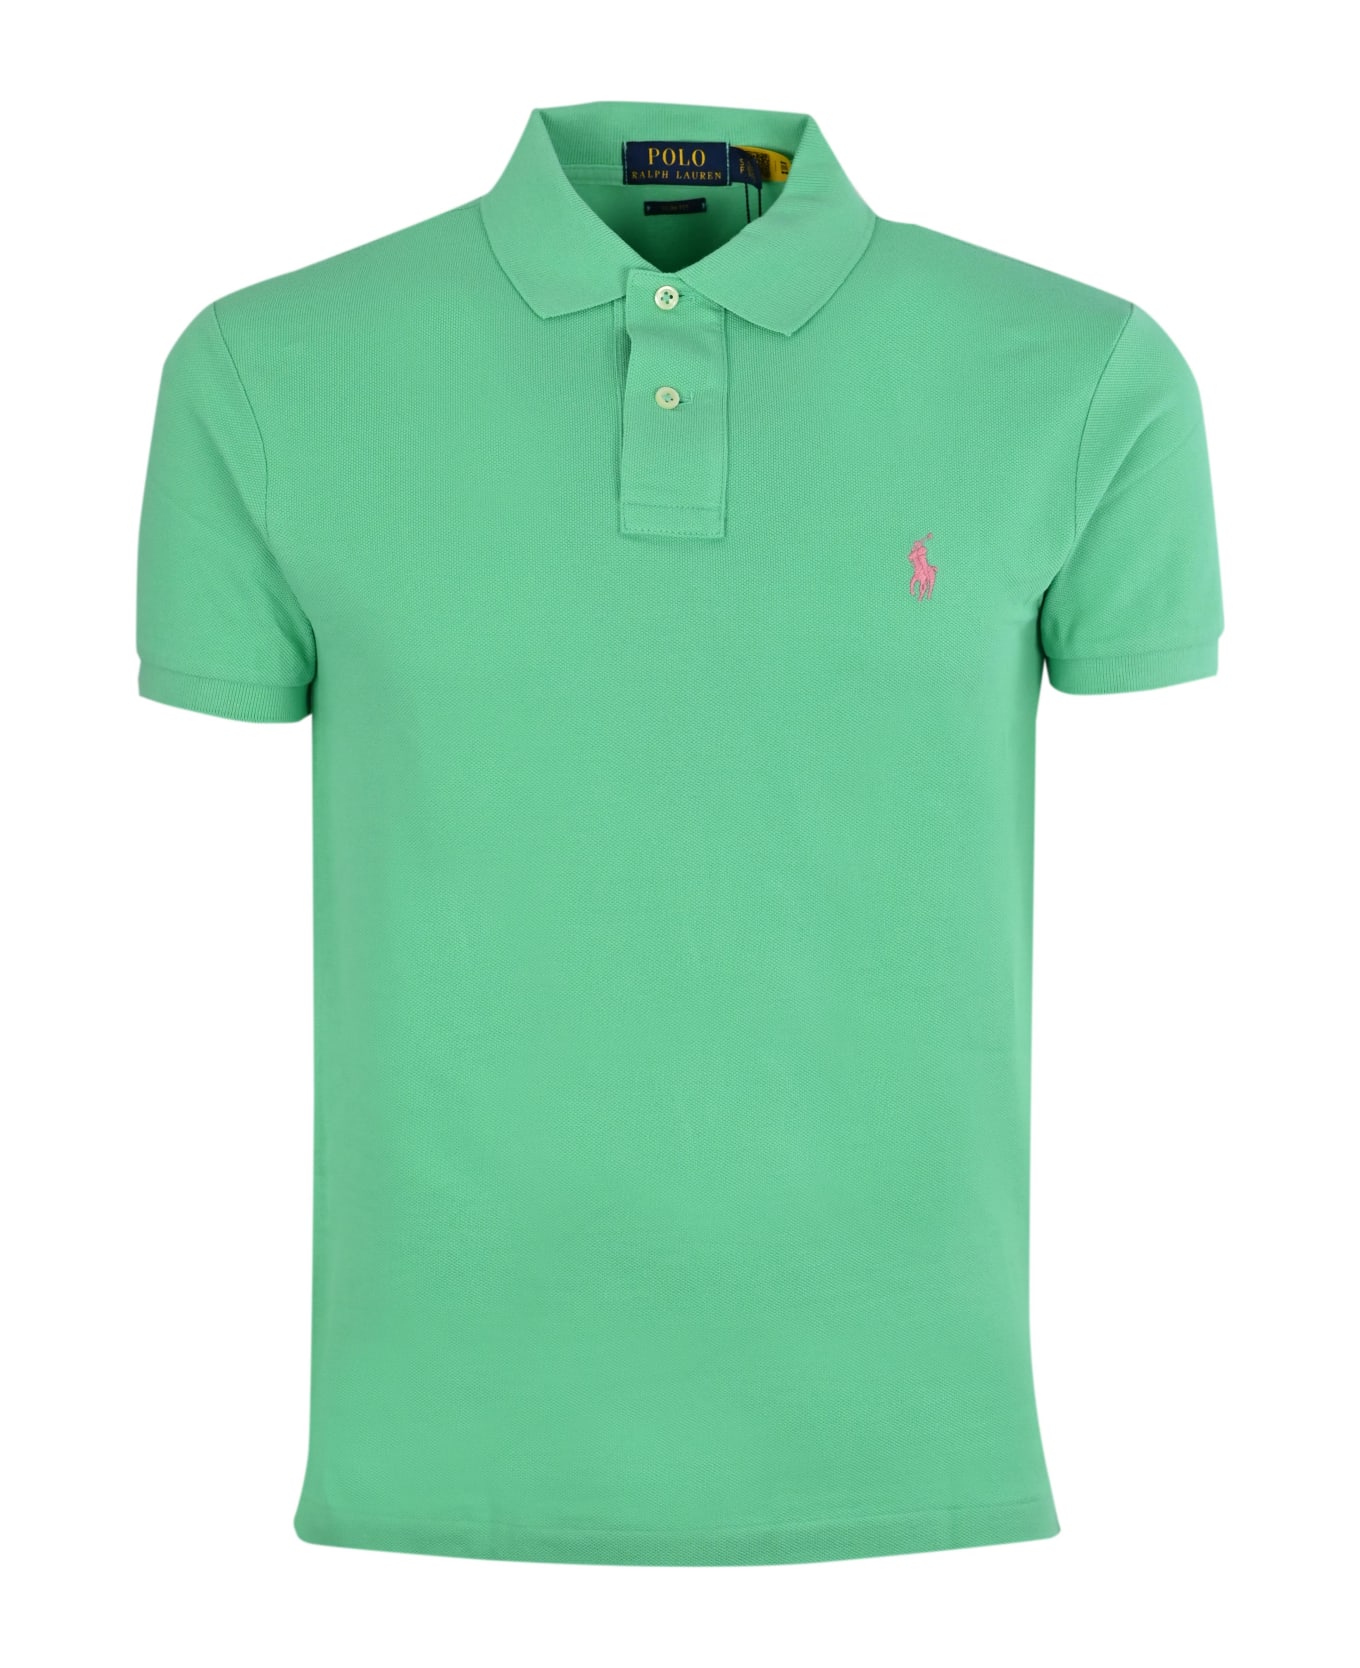 Polo Ralph Lauren Sunset Green And Pink Slim-fit Piquet Polo Shirt - Green